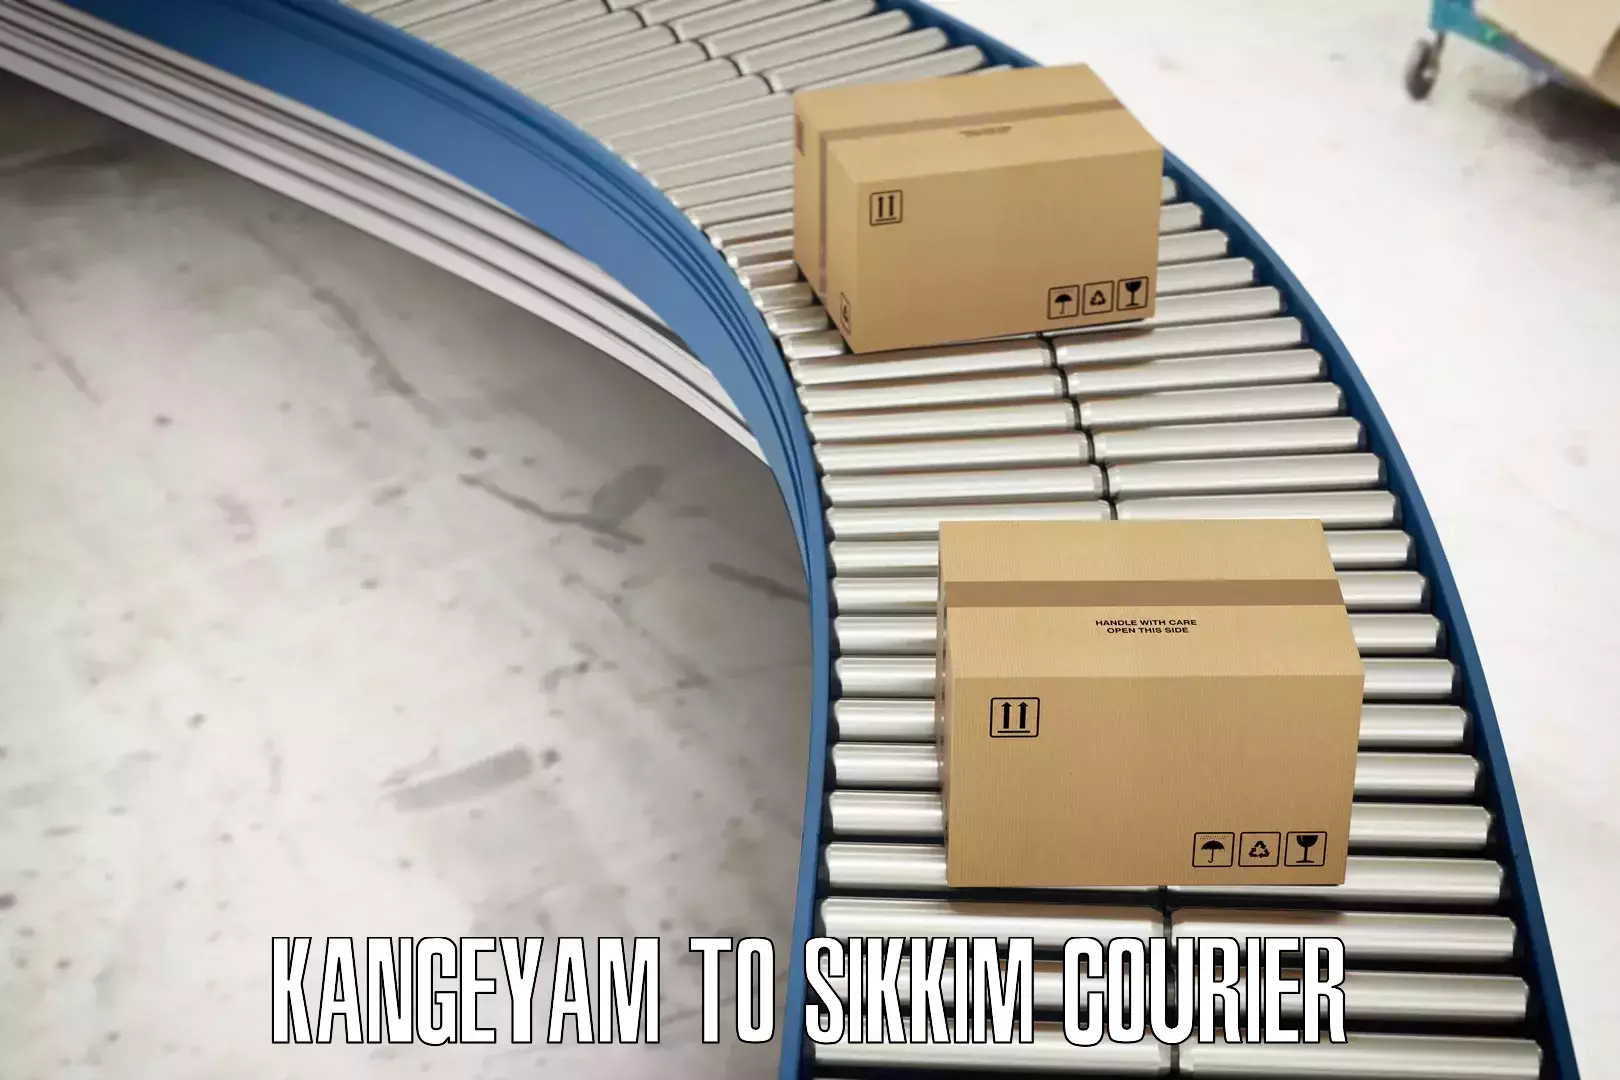 Customer-centric shipping Kangeyam to Mangan